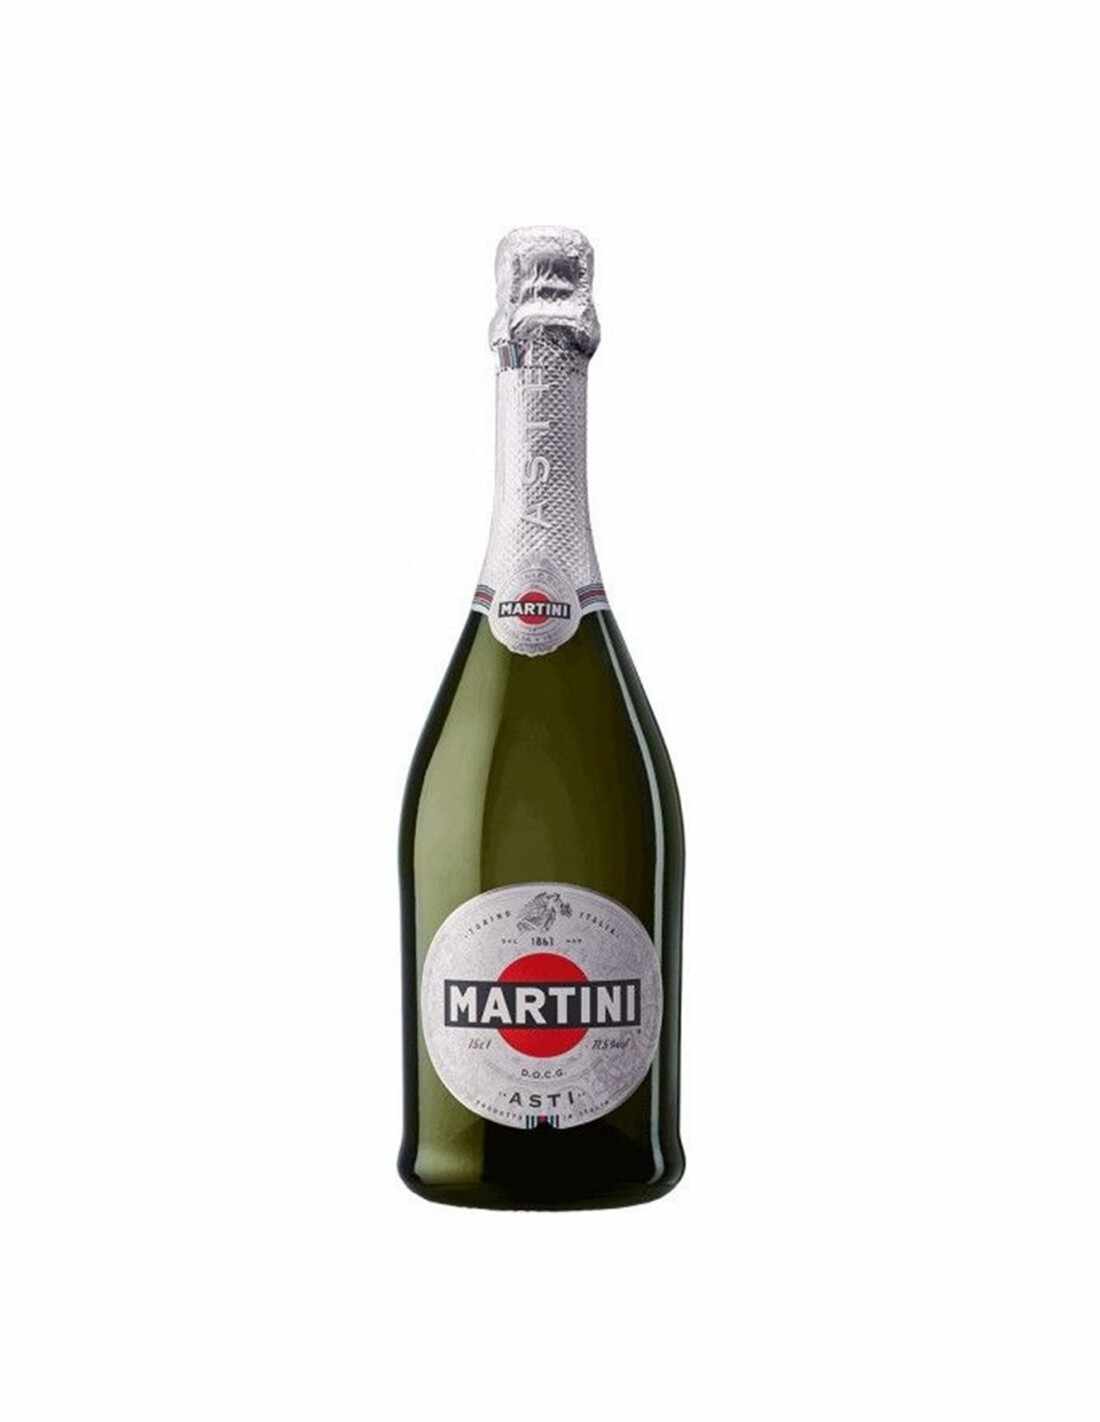 Vin spumant alb demidulce, Martini Asti, 0.75L, 7.50% alc., Italia